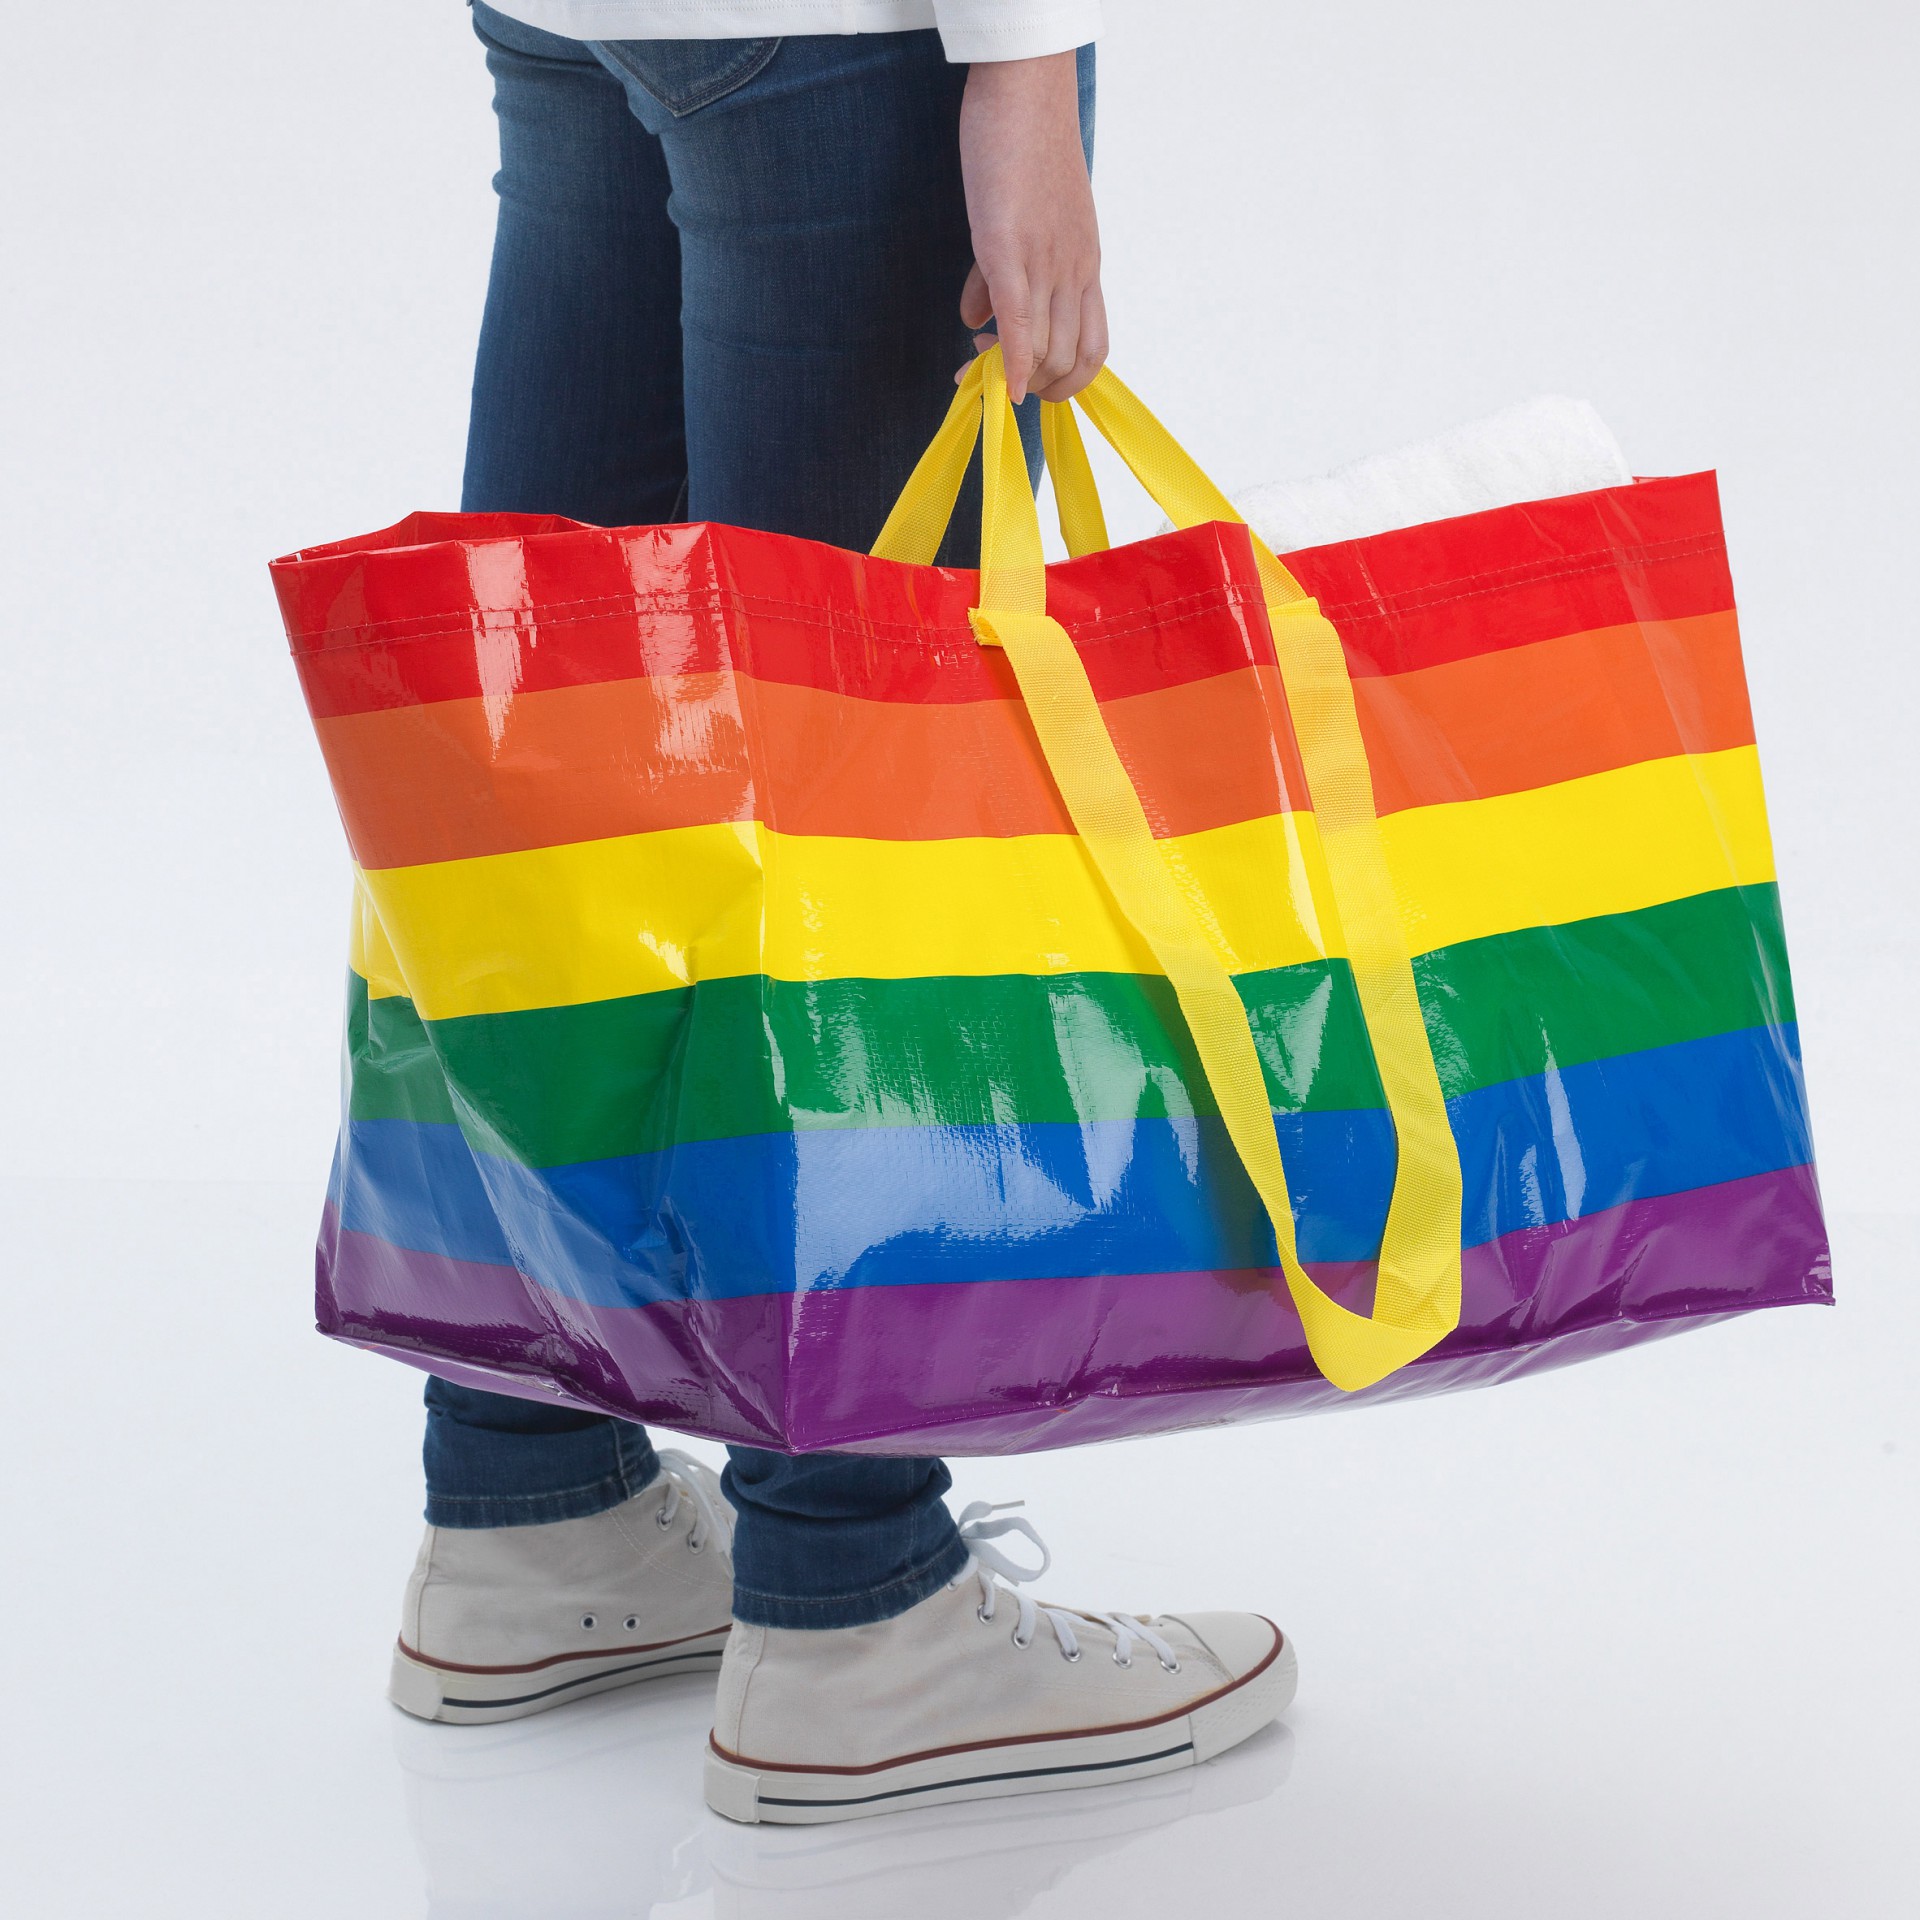 ikea rainbow bag